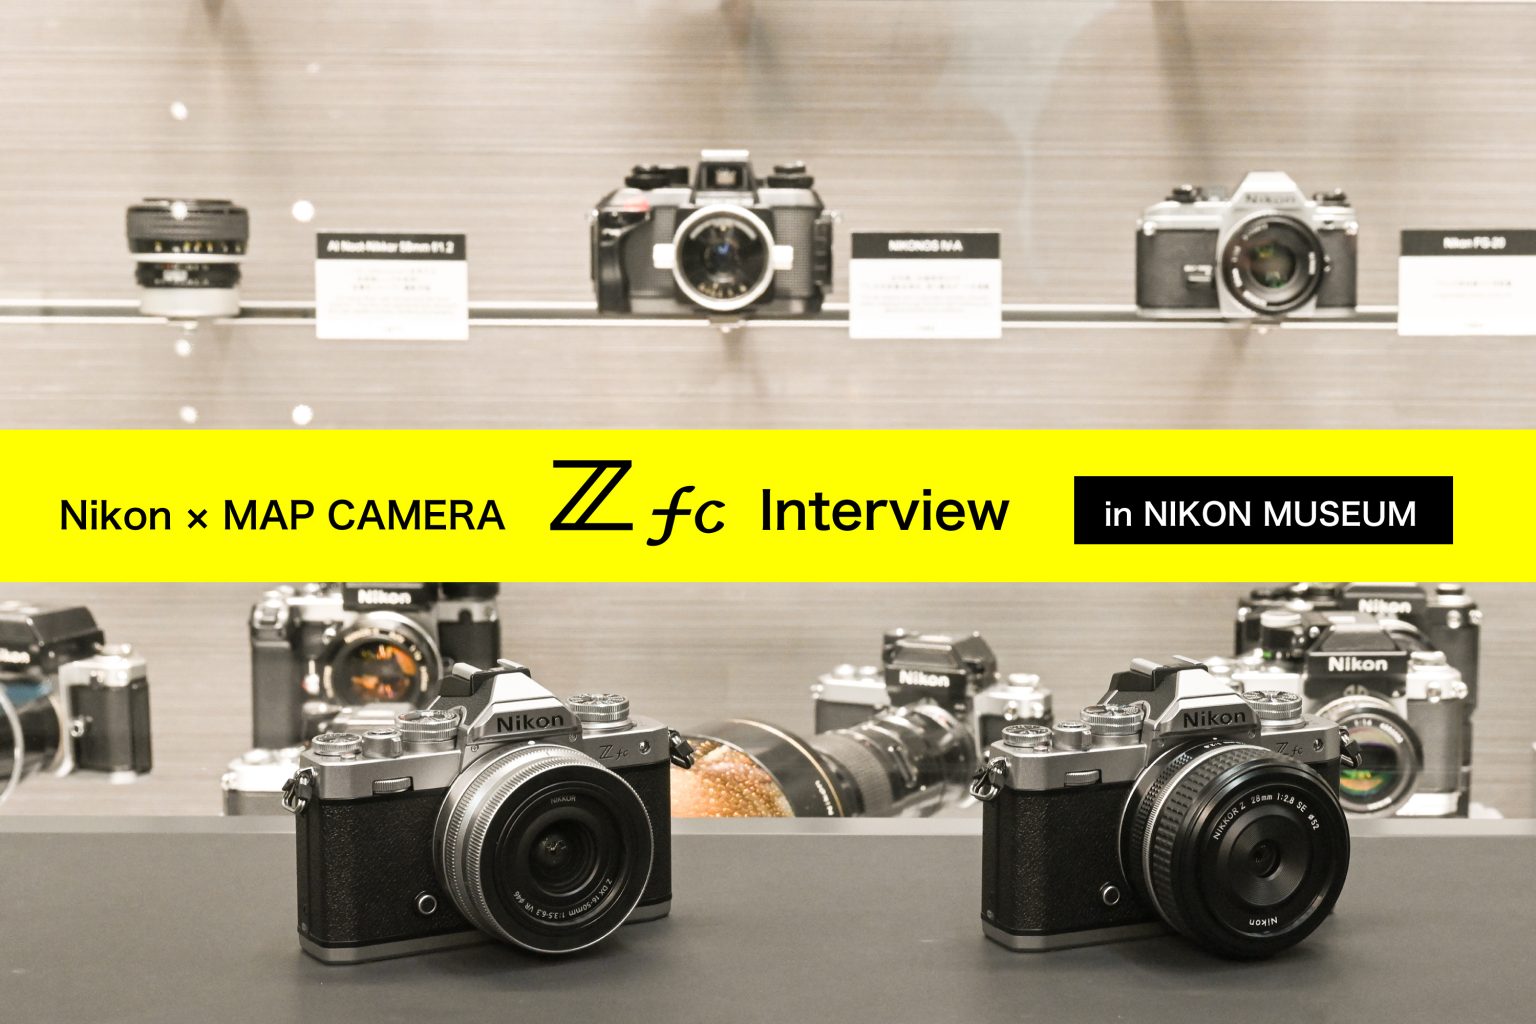 【Nikon】『Z fc』開発者インタビュー